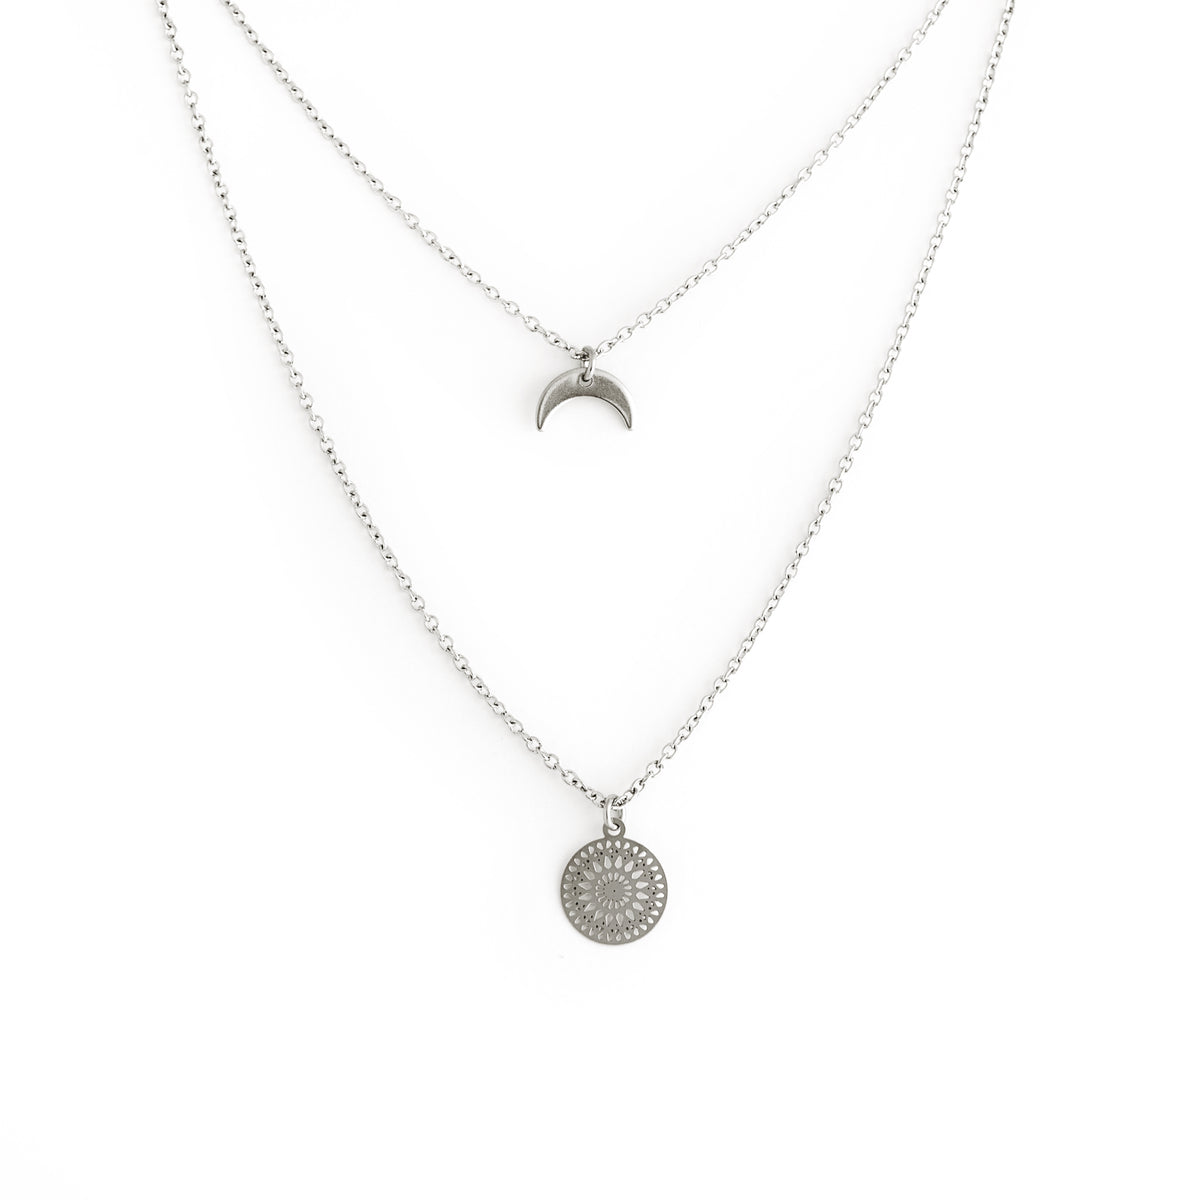 Mandala Necklace - Silver Mandala Necklace - Silver